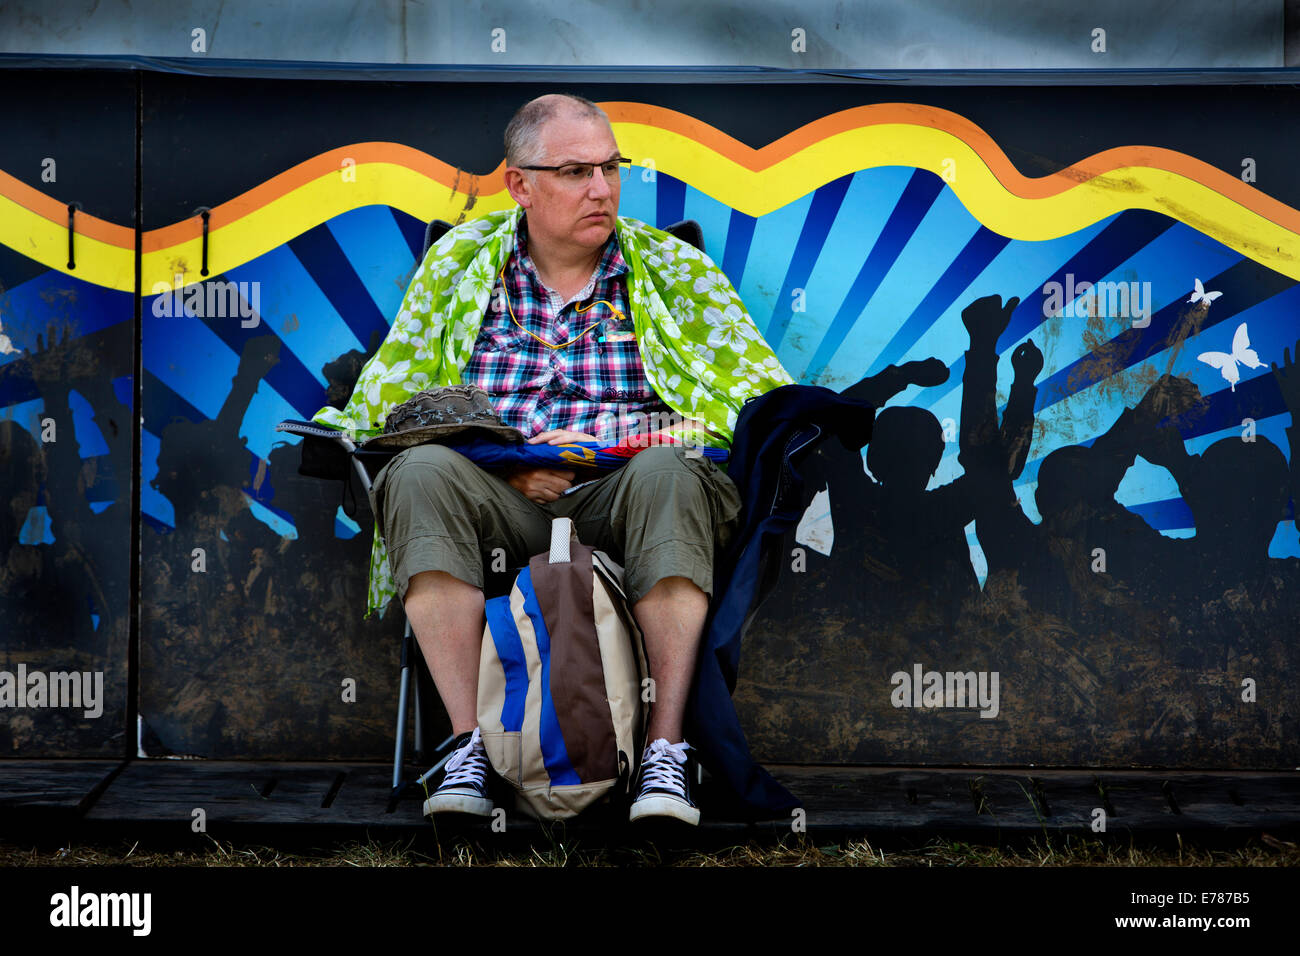 El festival de Glastonbury 2014 anciano descansando sobre una silla Foto de stock